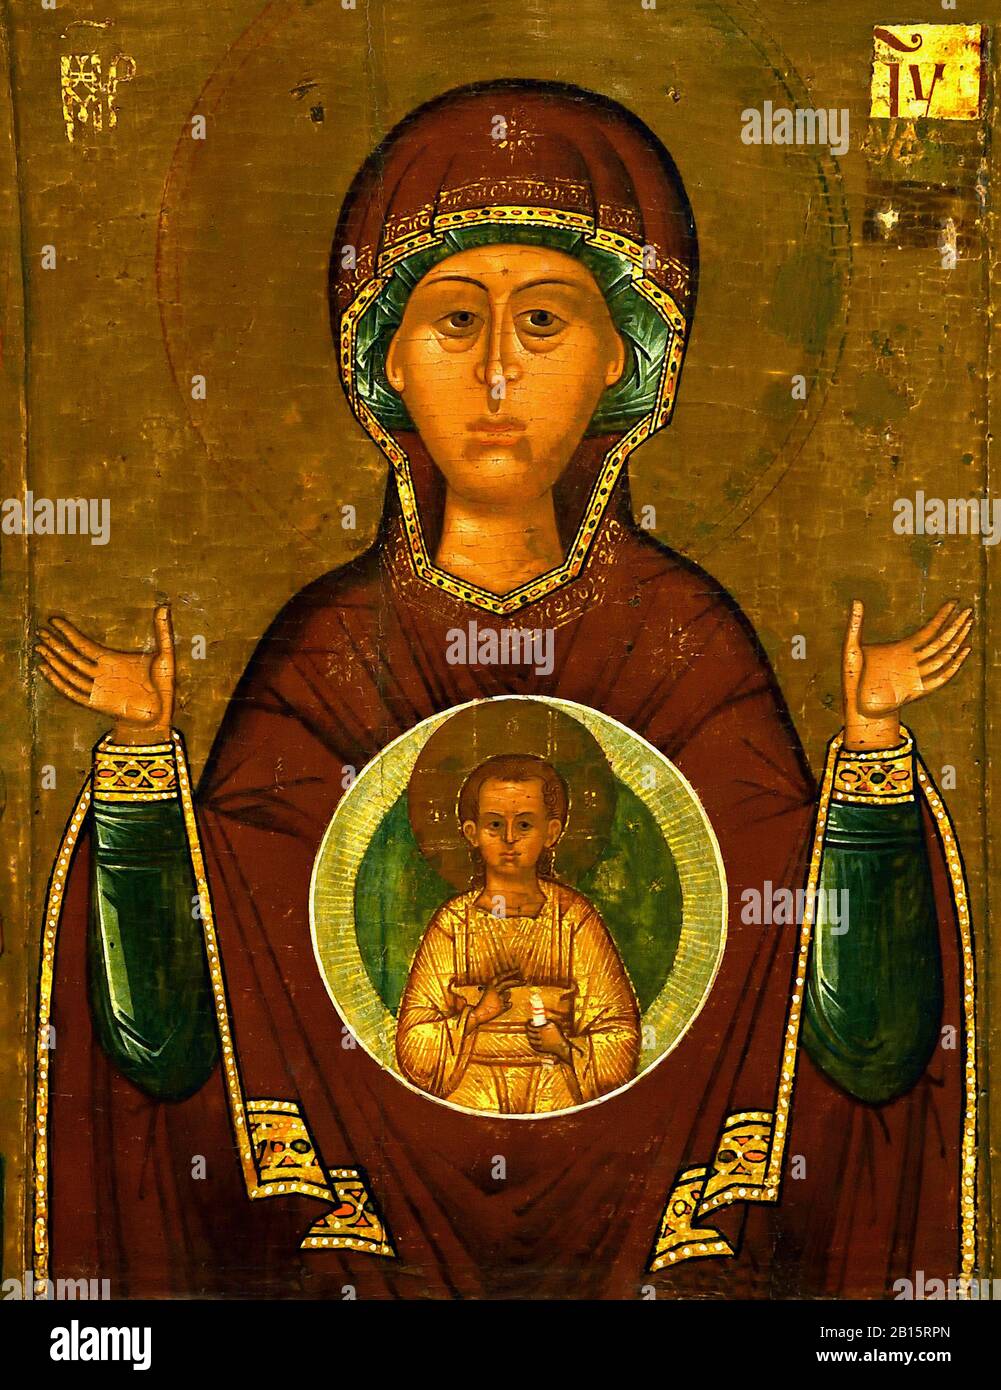 Ikone Der Mutter gottes des heiligen Zeichens 16. Jahrhundert Ende ( Diese Ikone ist eine Kopie der Wunderwirkungssymbole, die die Stadt Nowgorod rettete) Russland, Russland, Föderation, Stockfoto